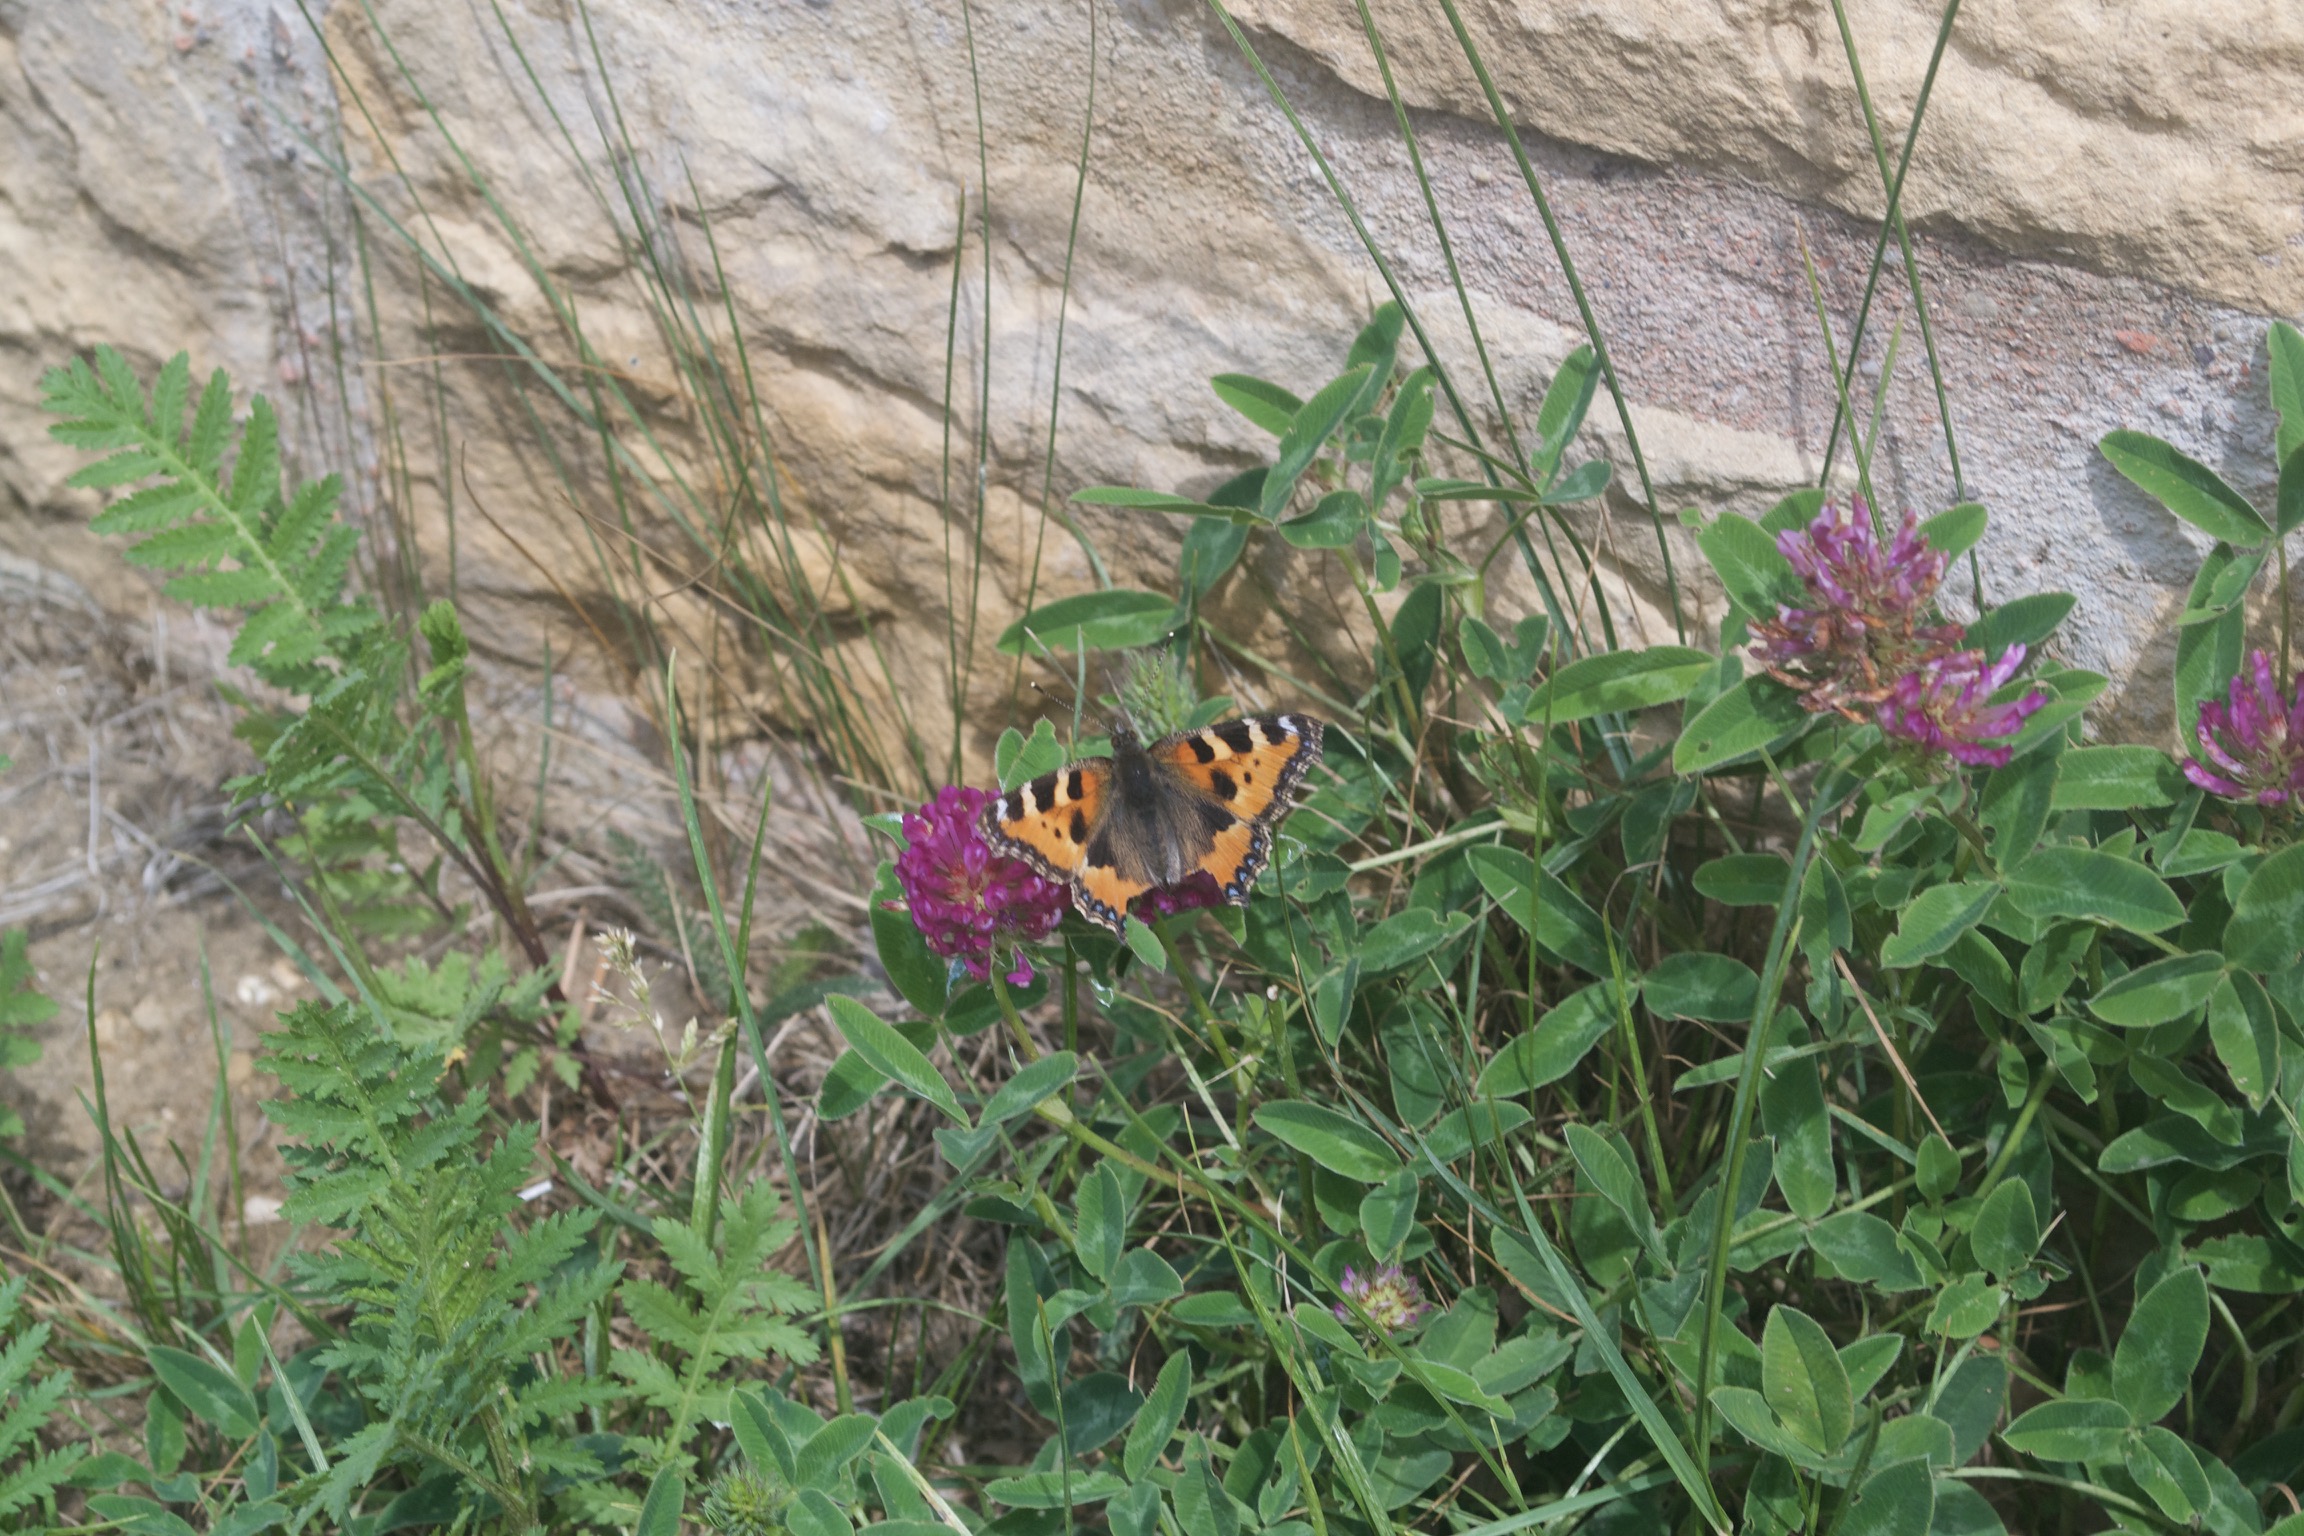 An orange butterfly sits on a purple flower.